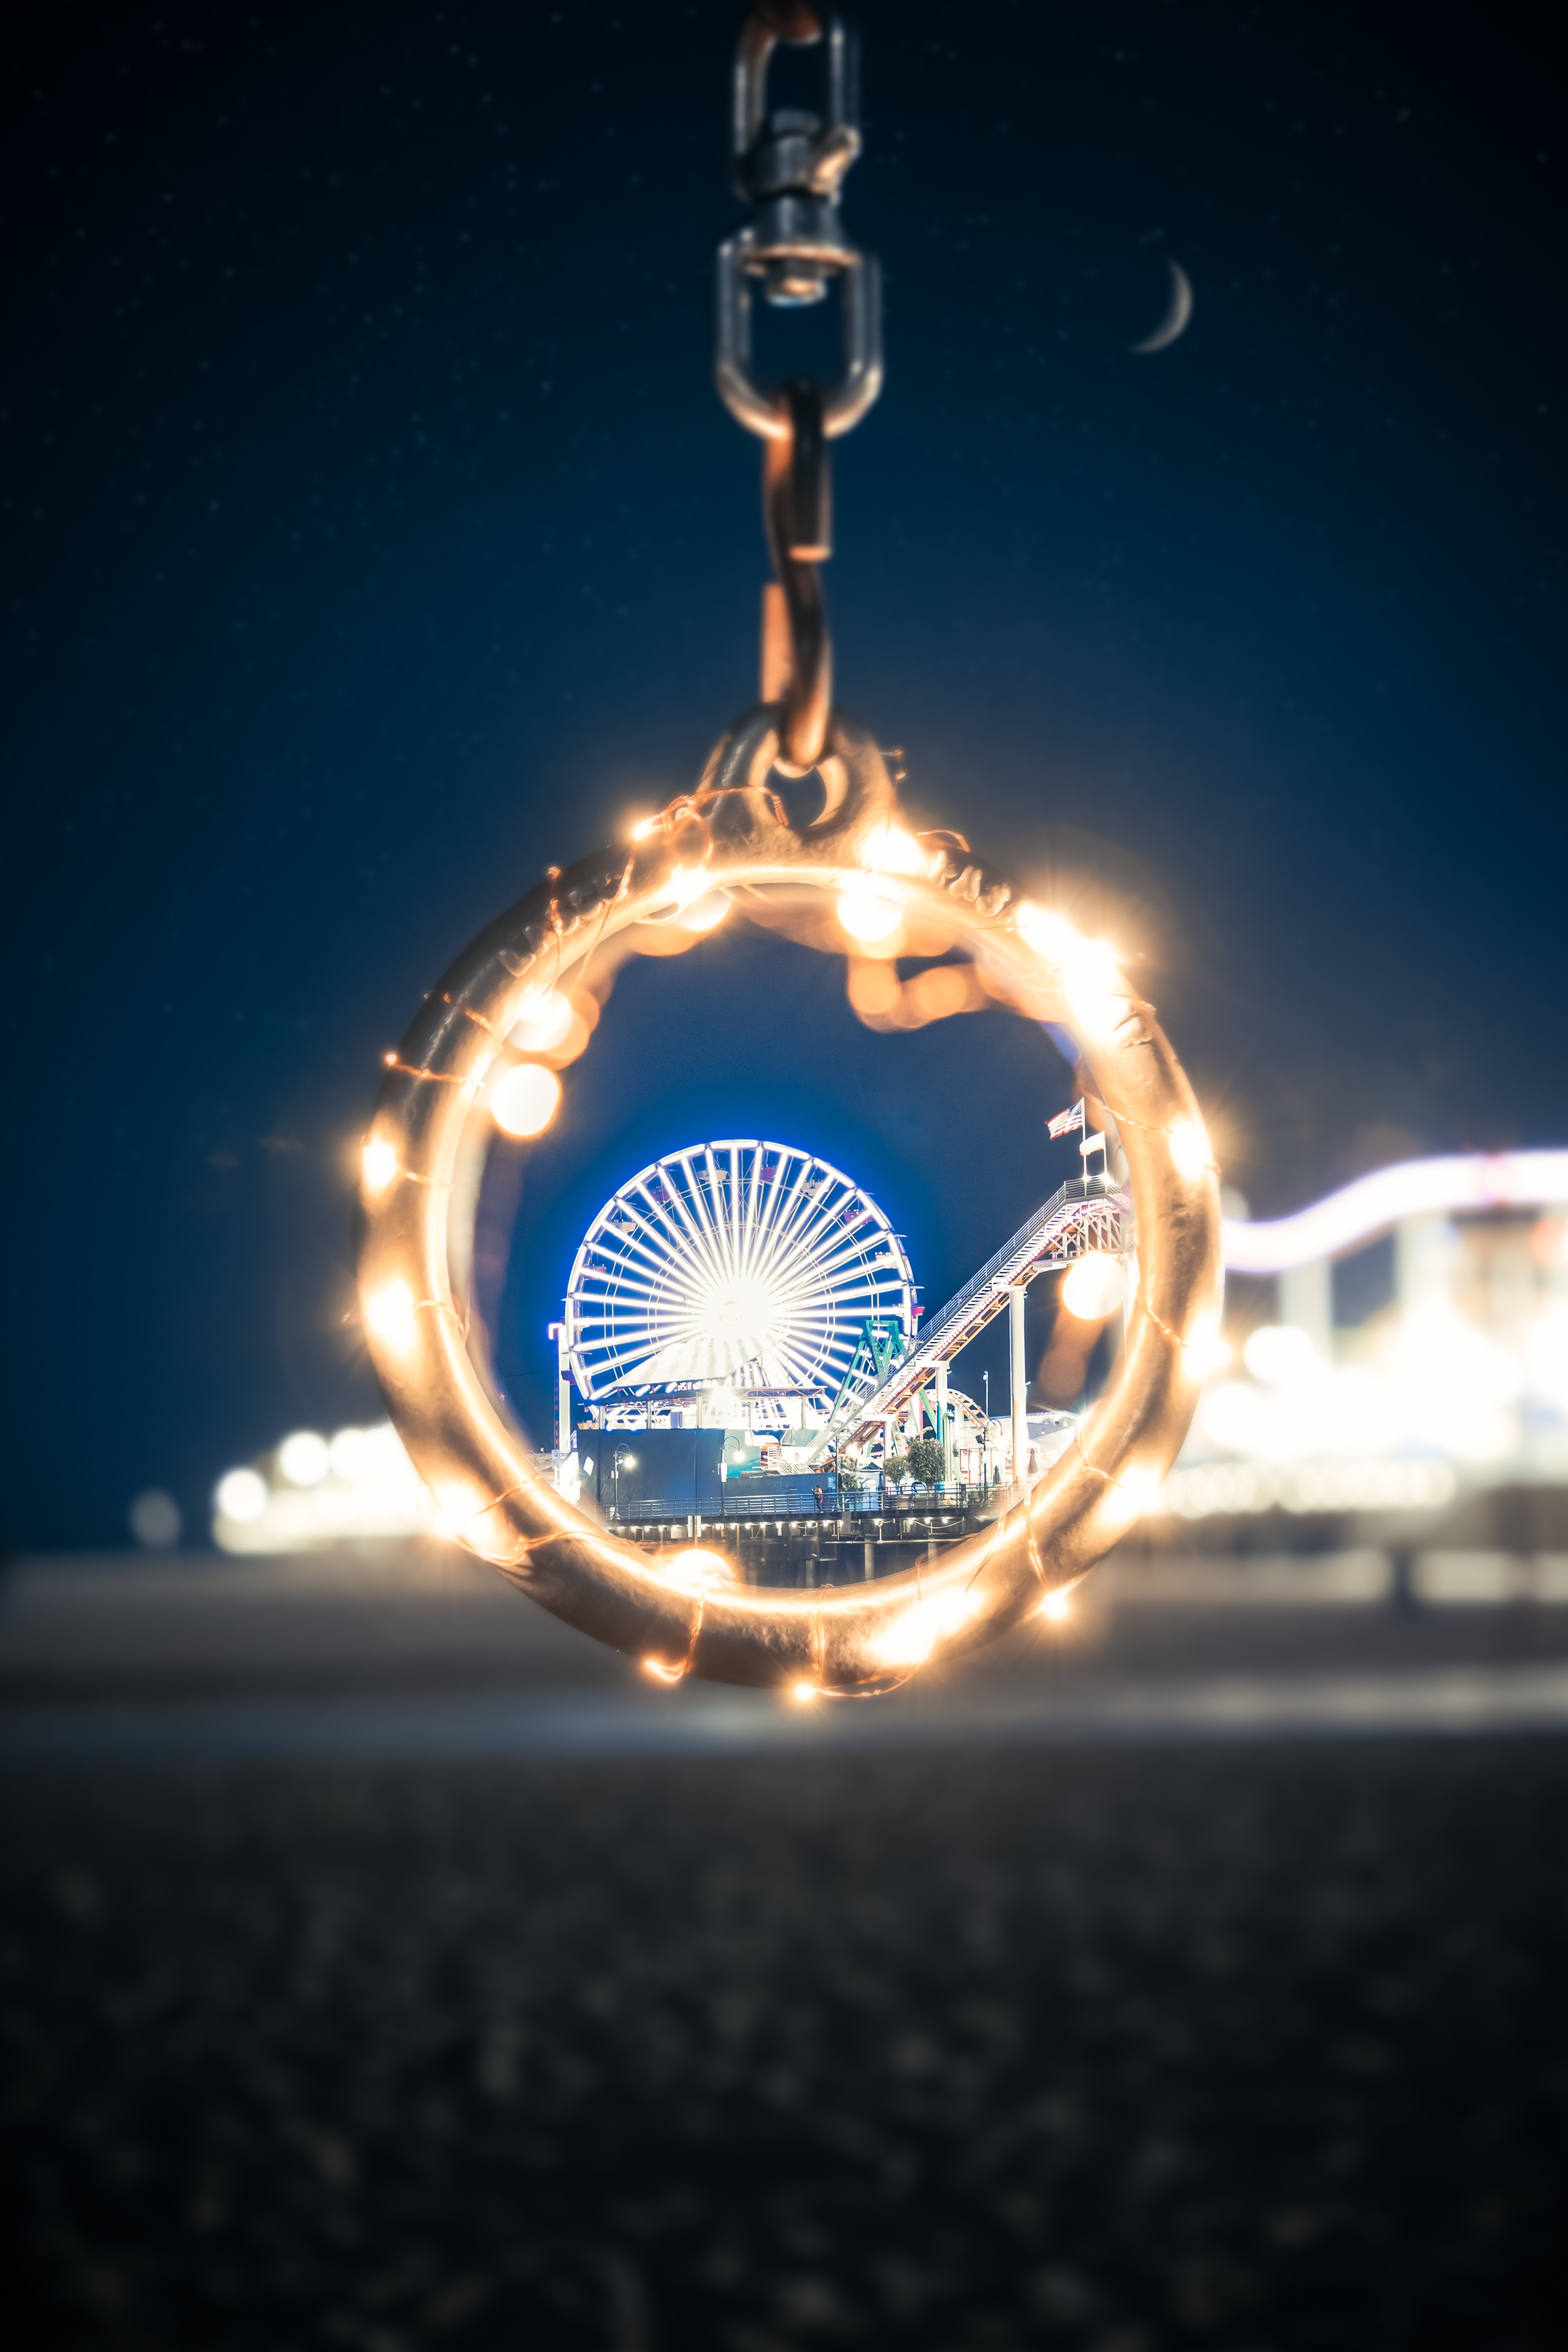 Ferris Wheel Picture by Brayden Law